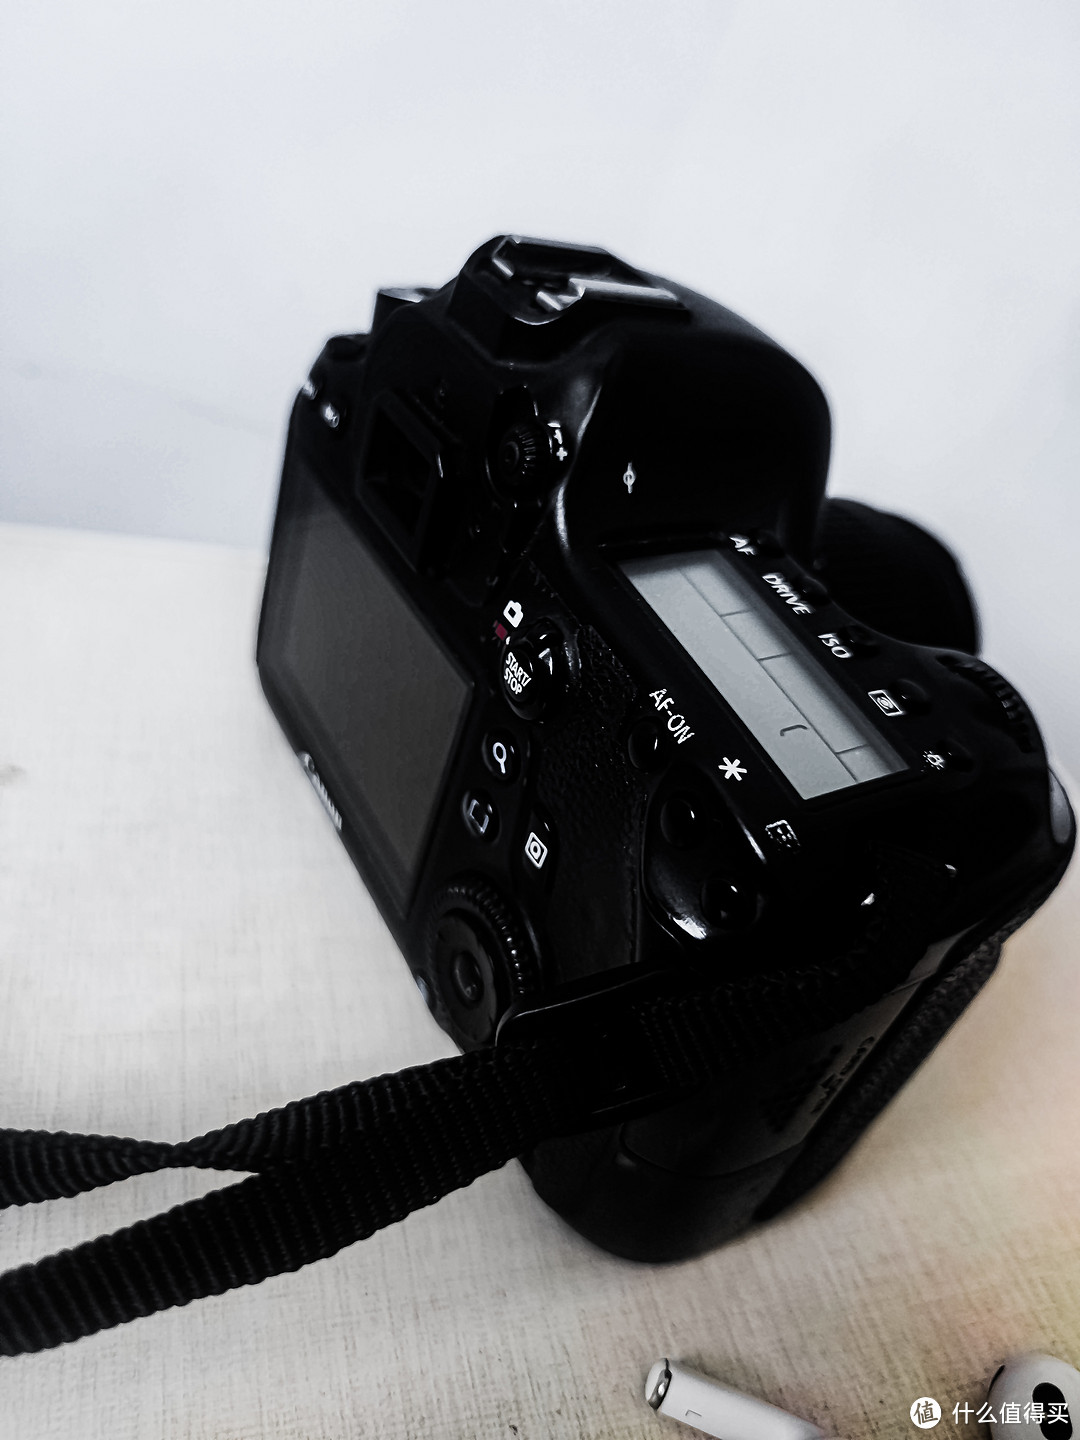 佳能相机测评，关于怎么使用佳能相机下一期介绍？